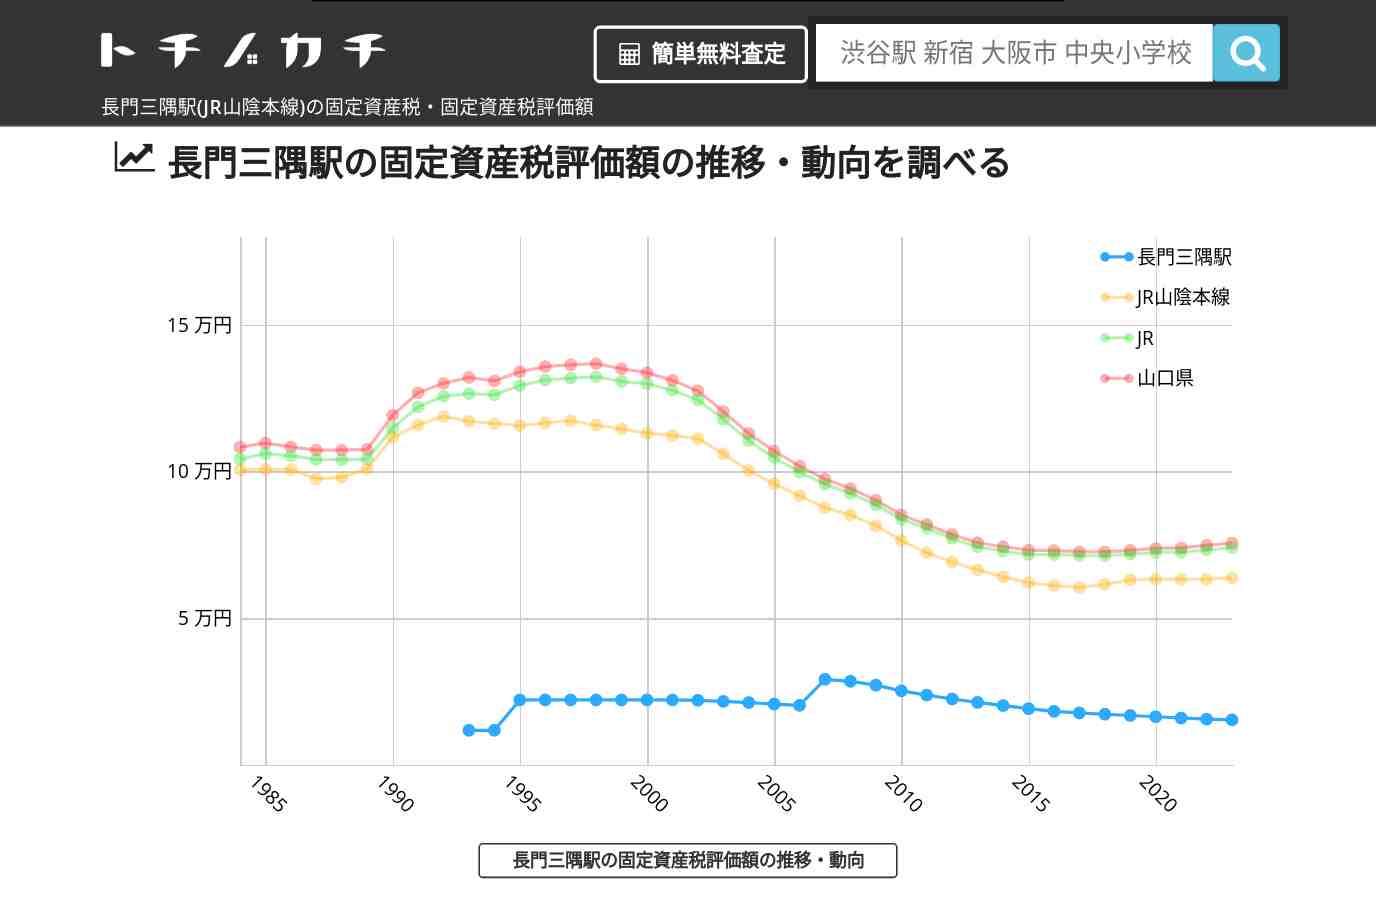 長門三隅駅(JR山陰本線)の固定資産税・固定資産税評価額 | トチノカチ